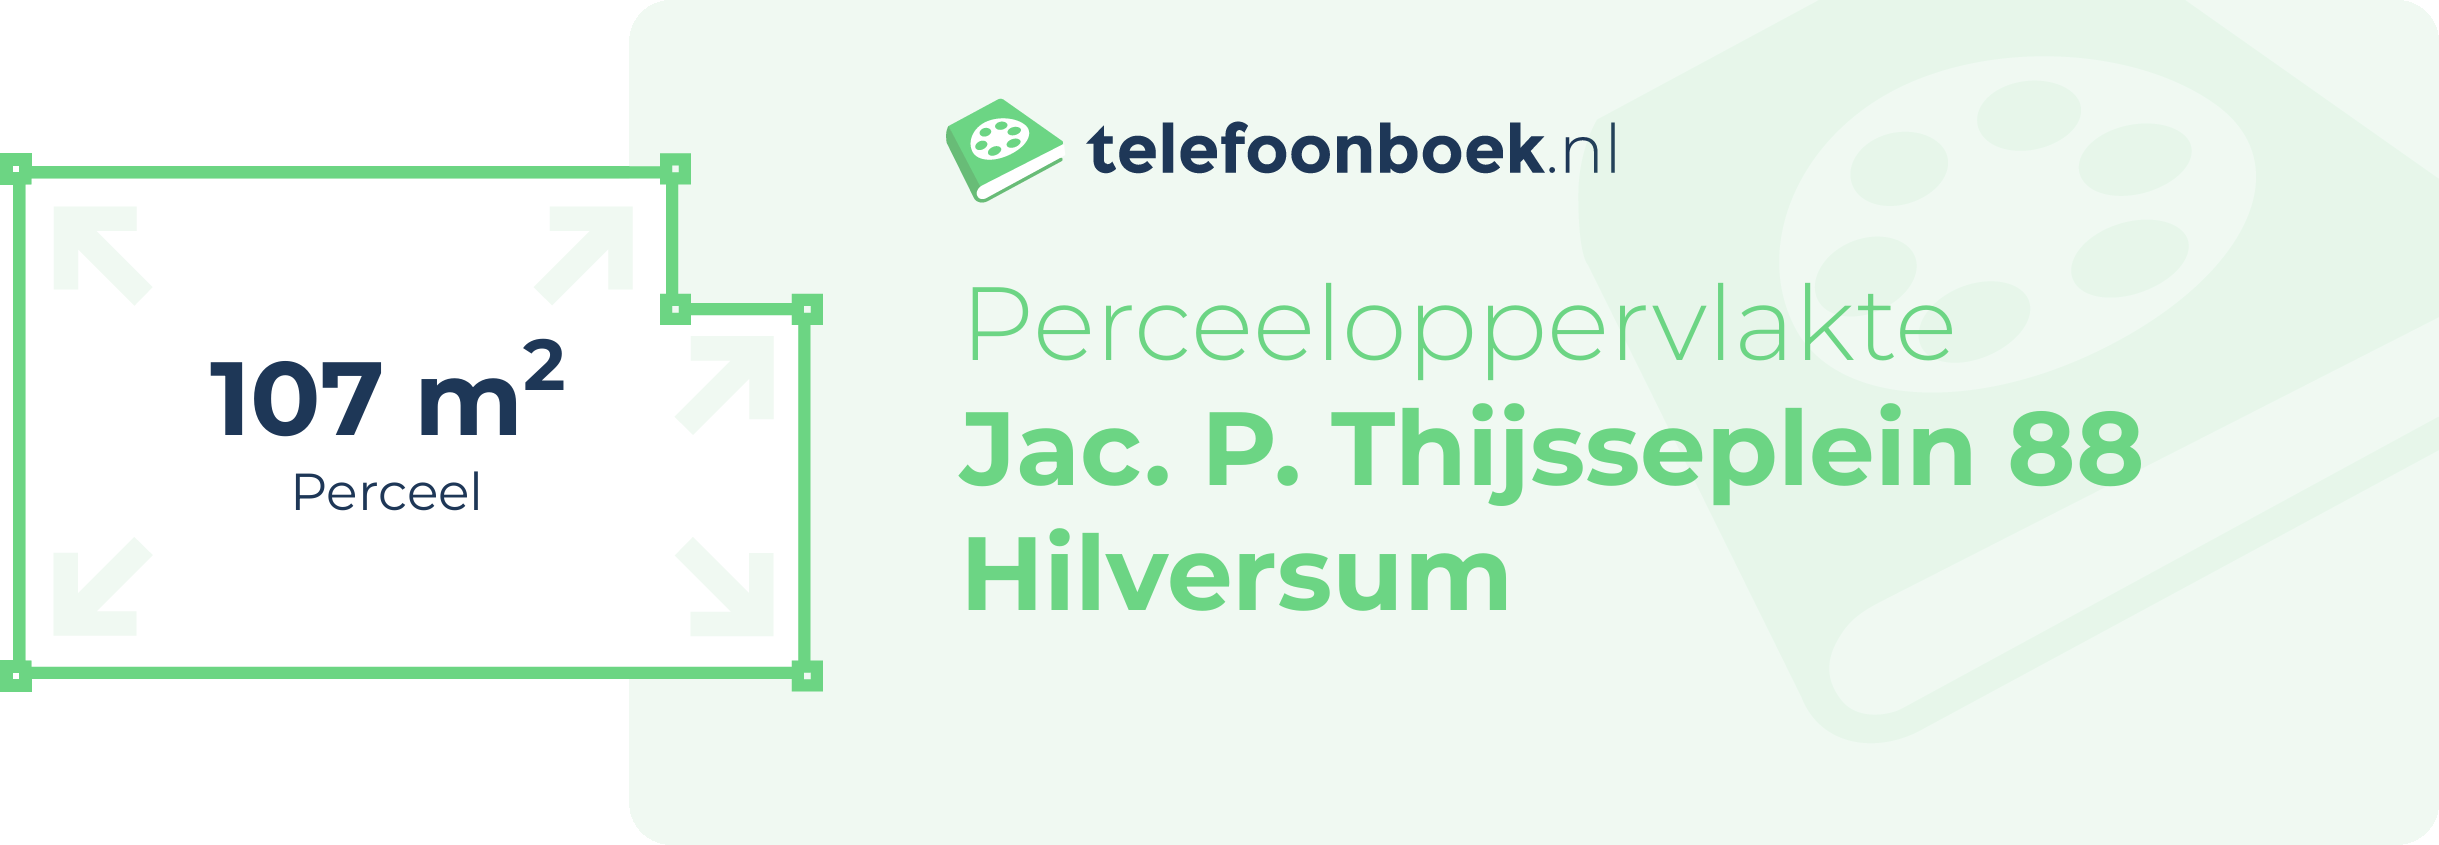 Perceeloppervlakte Jac. P. Thijsseplein 88 Hilversum